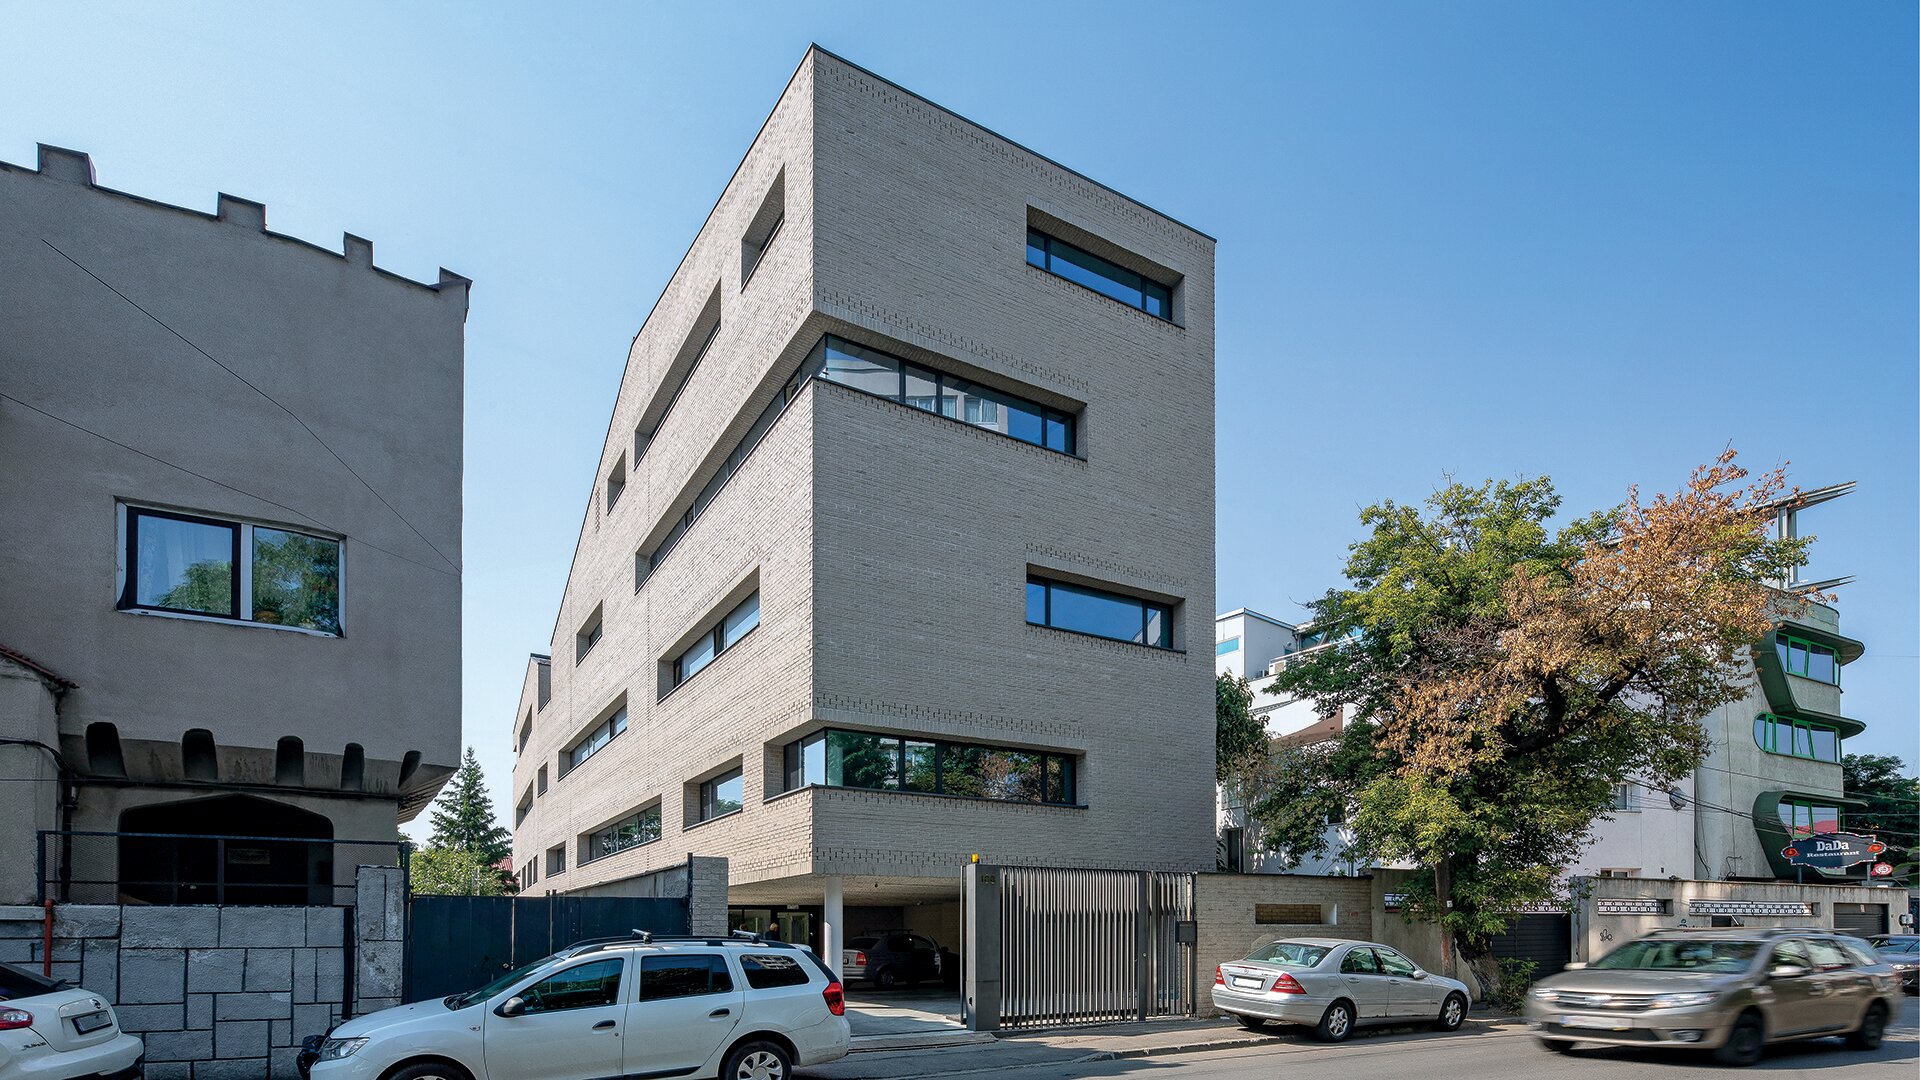 Office building on Matei Voievod street